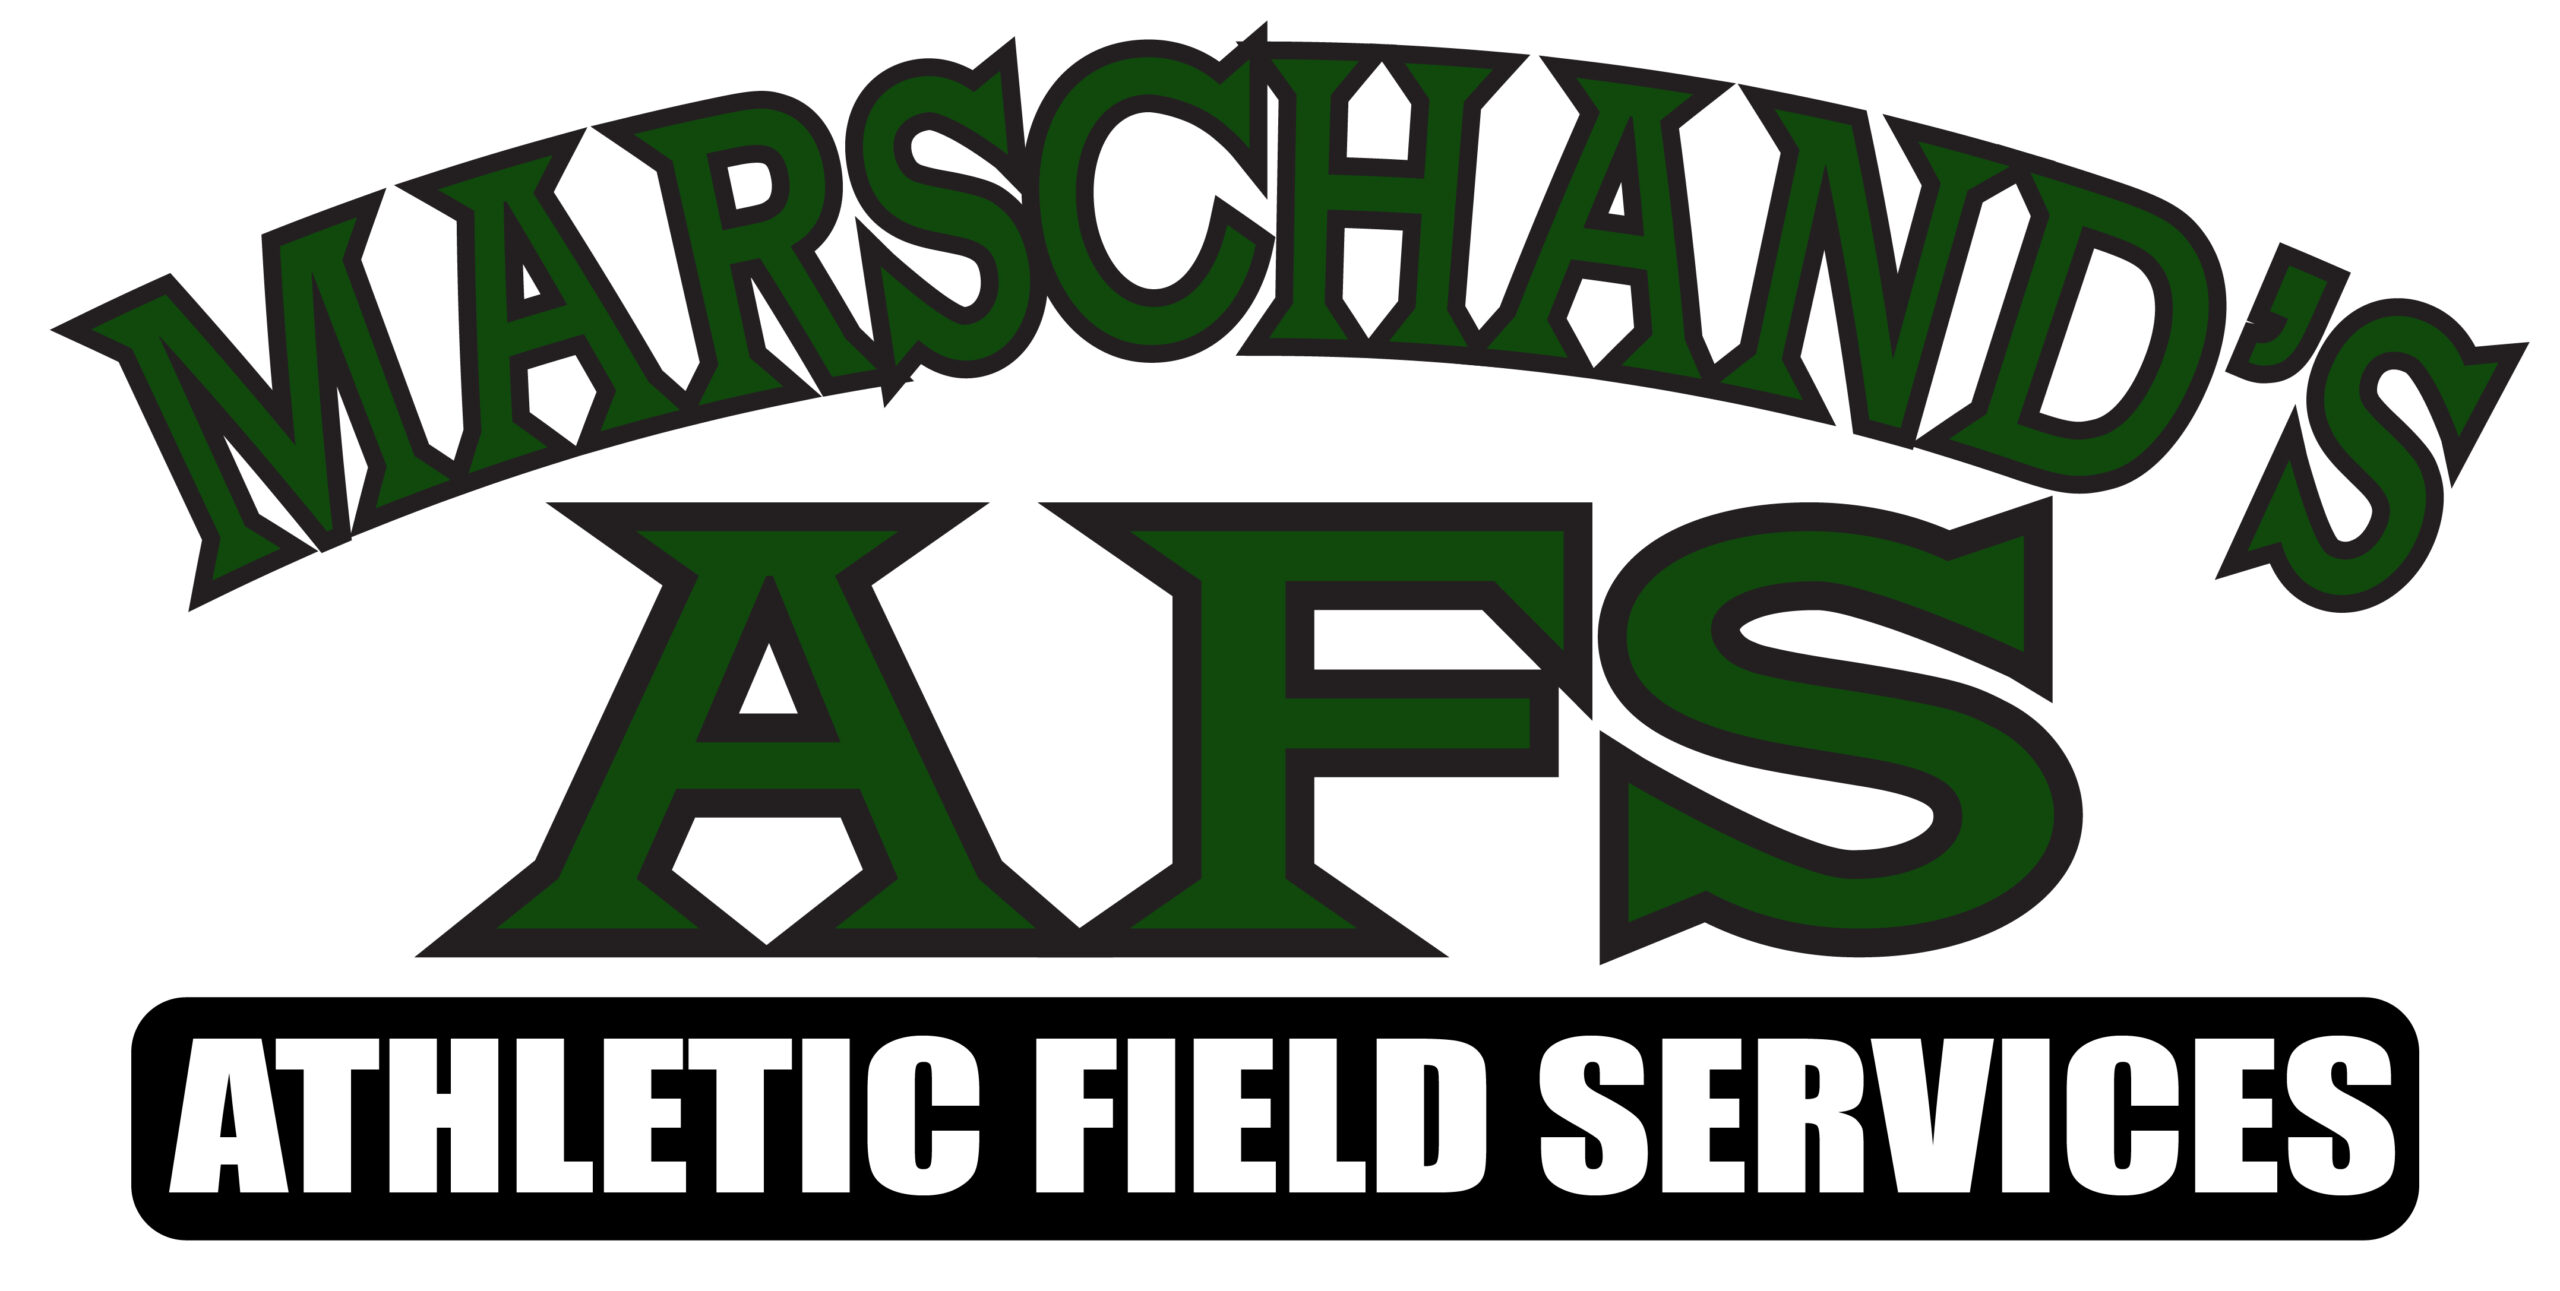 Marschand's Athletic Field Service